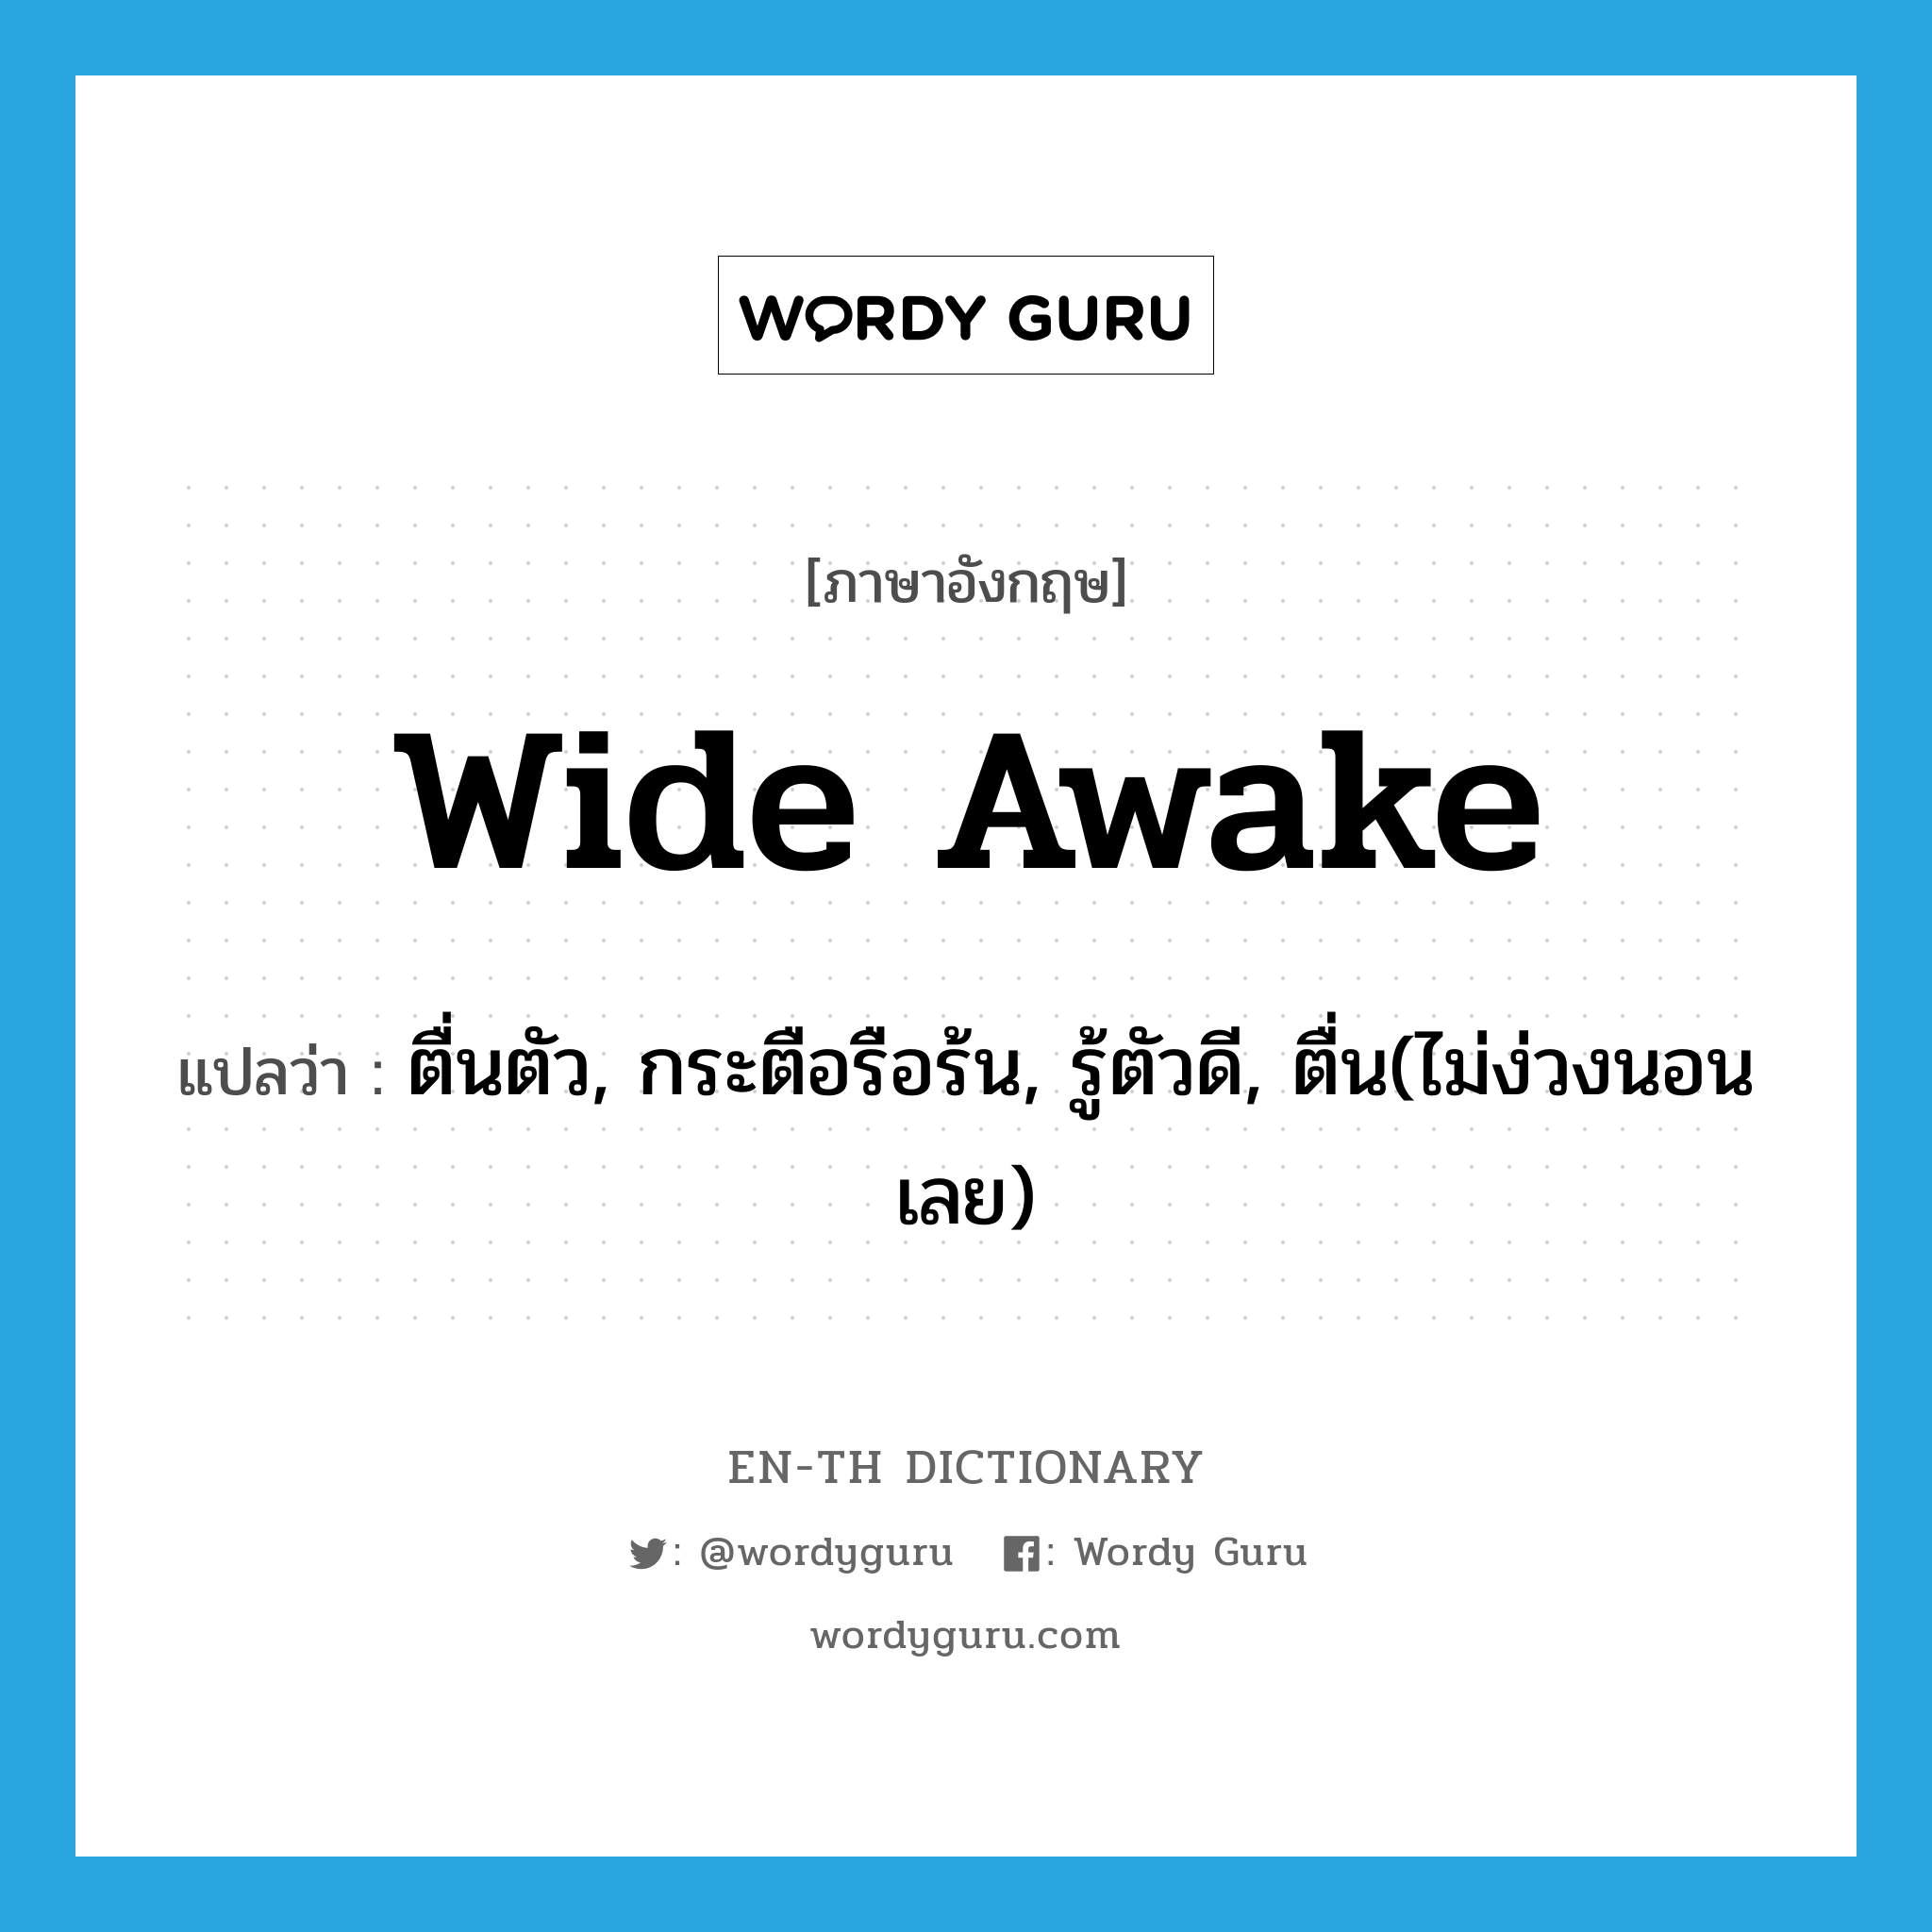 ตื่นตัว, กระตือรือร้น, รู้ตัวดี, ตื่น(ไม่ง่วงนอนเลย) ภาษาอังกฤษ?, คำศัพท์ภาษาอังกฤษ ตื่นตัว, กระตือรือร้น, รู้ตัวดี, ตื่น(ไม่ง่วงนอนเลย) แปลว่า wide awake ประเภท IDM หมวด IDM